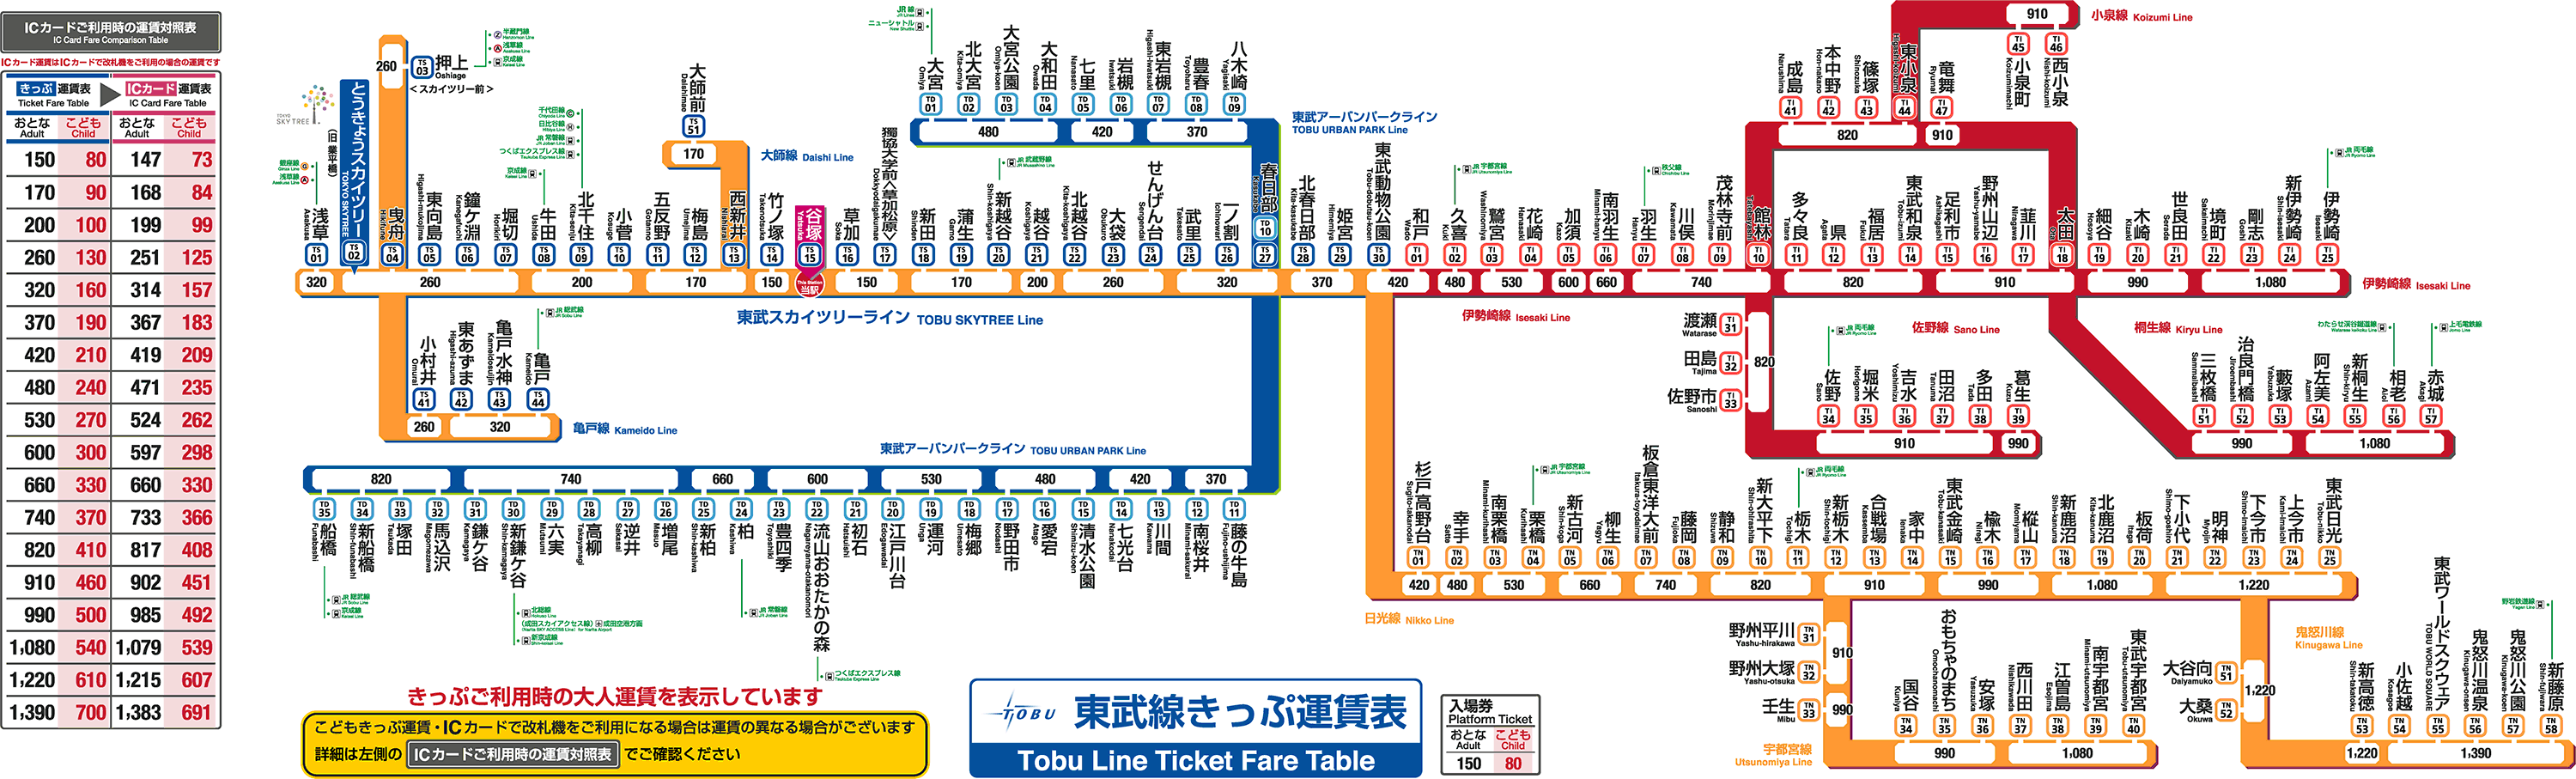 谷塚駅 きっぷ運賃表 東武鉄道ポータルサイト